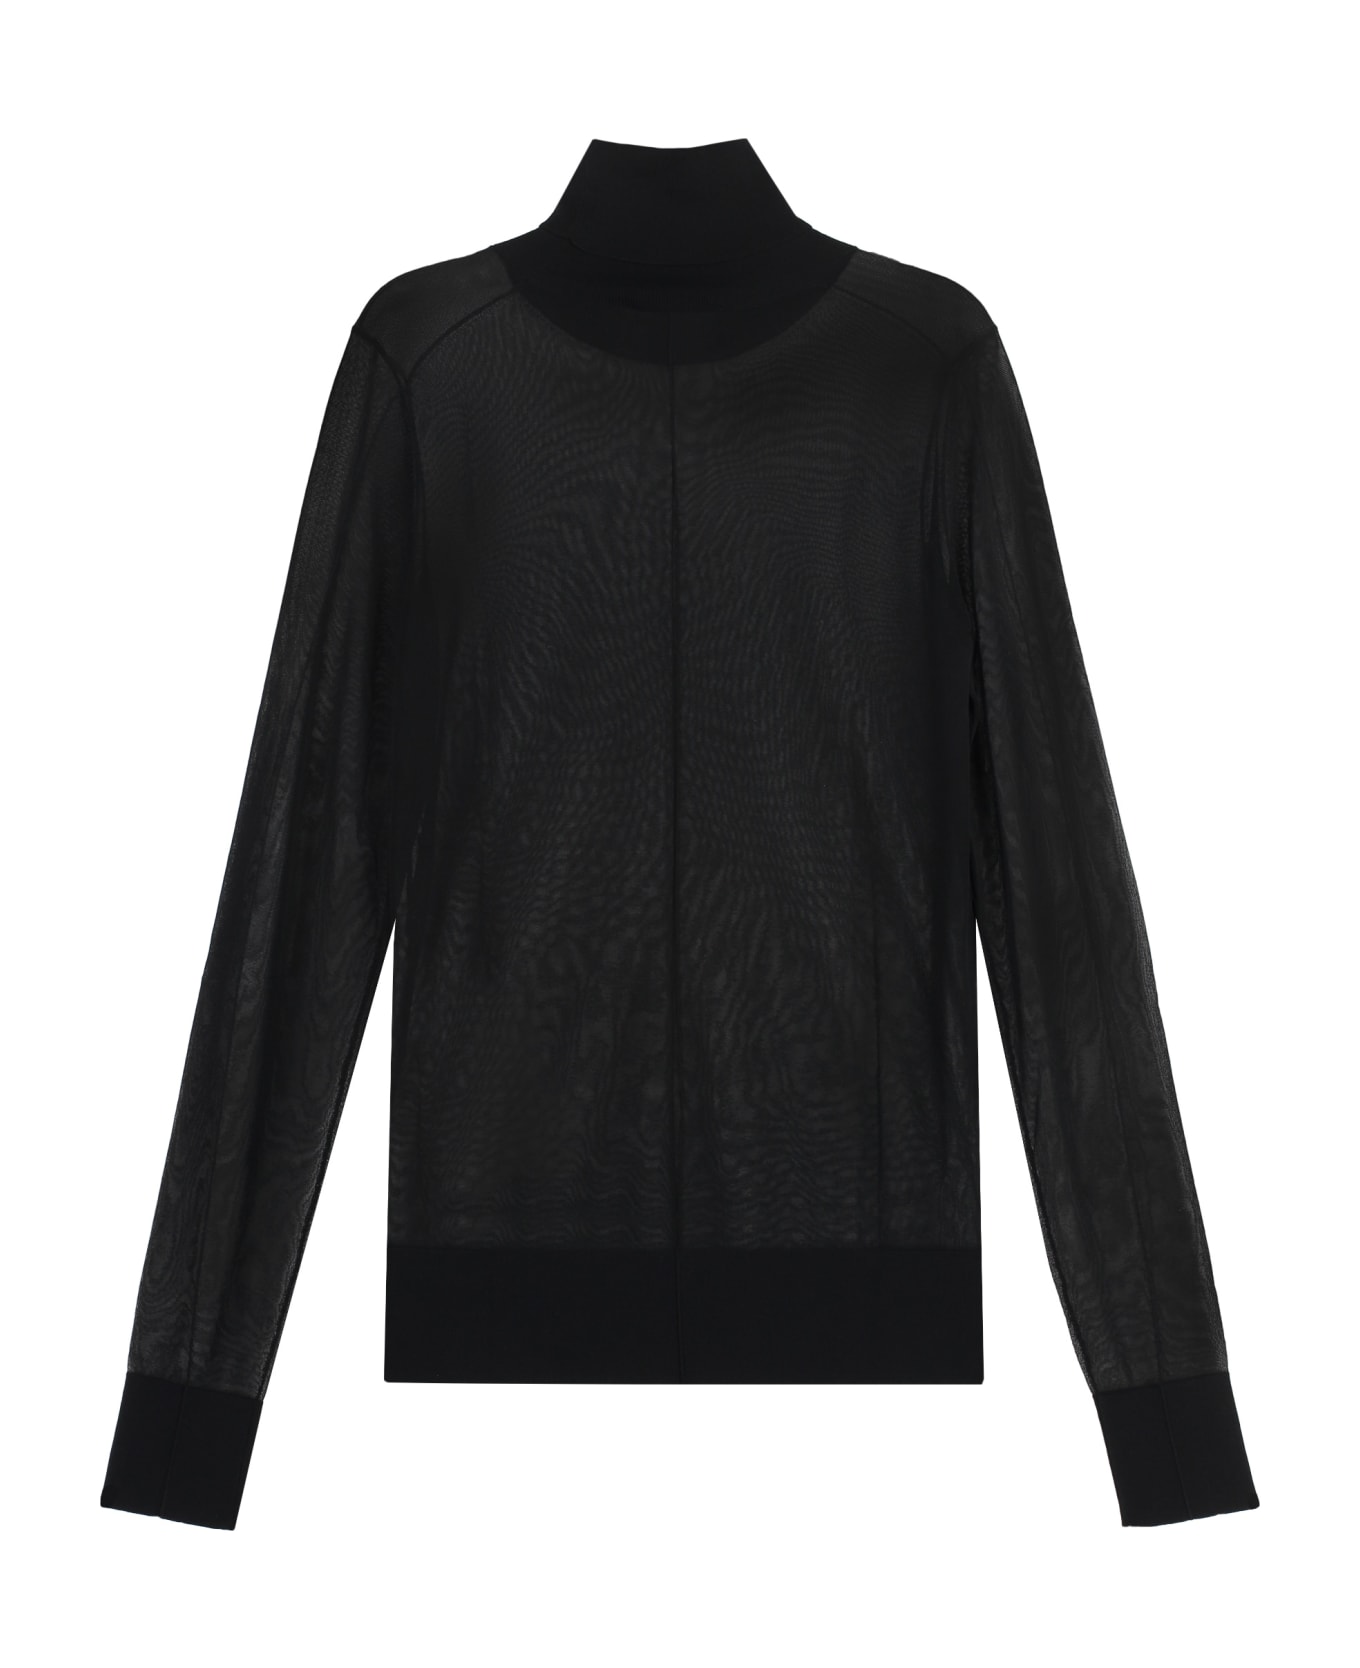 Calvin Klein Knitwork Turtleneck Sweater - black